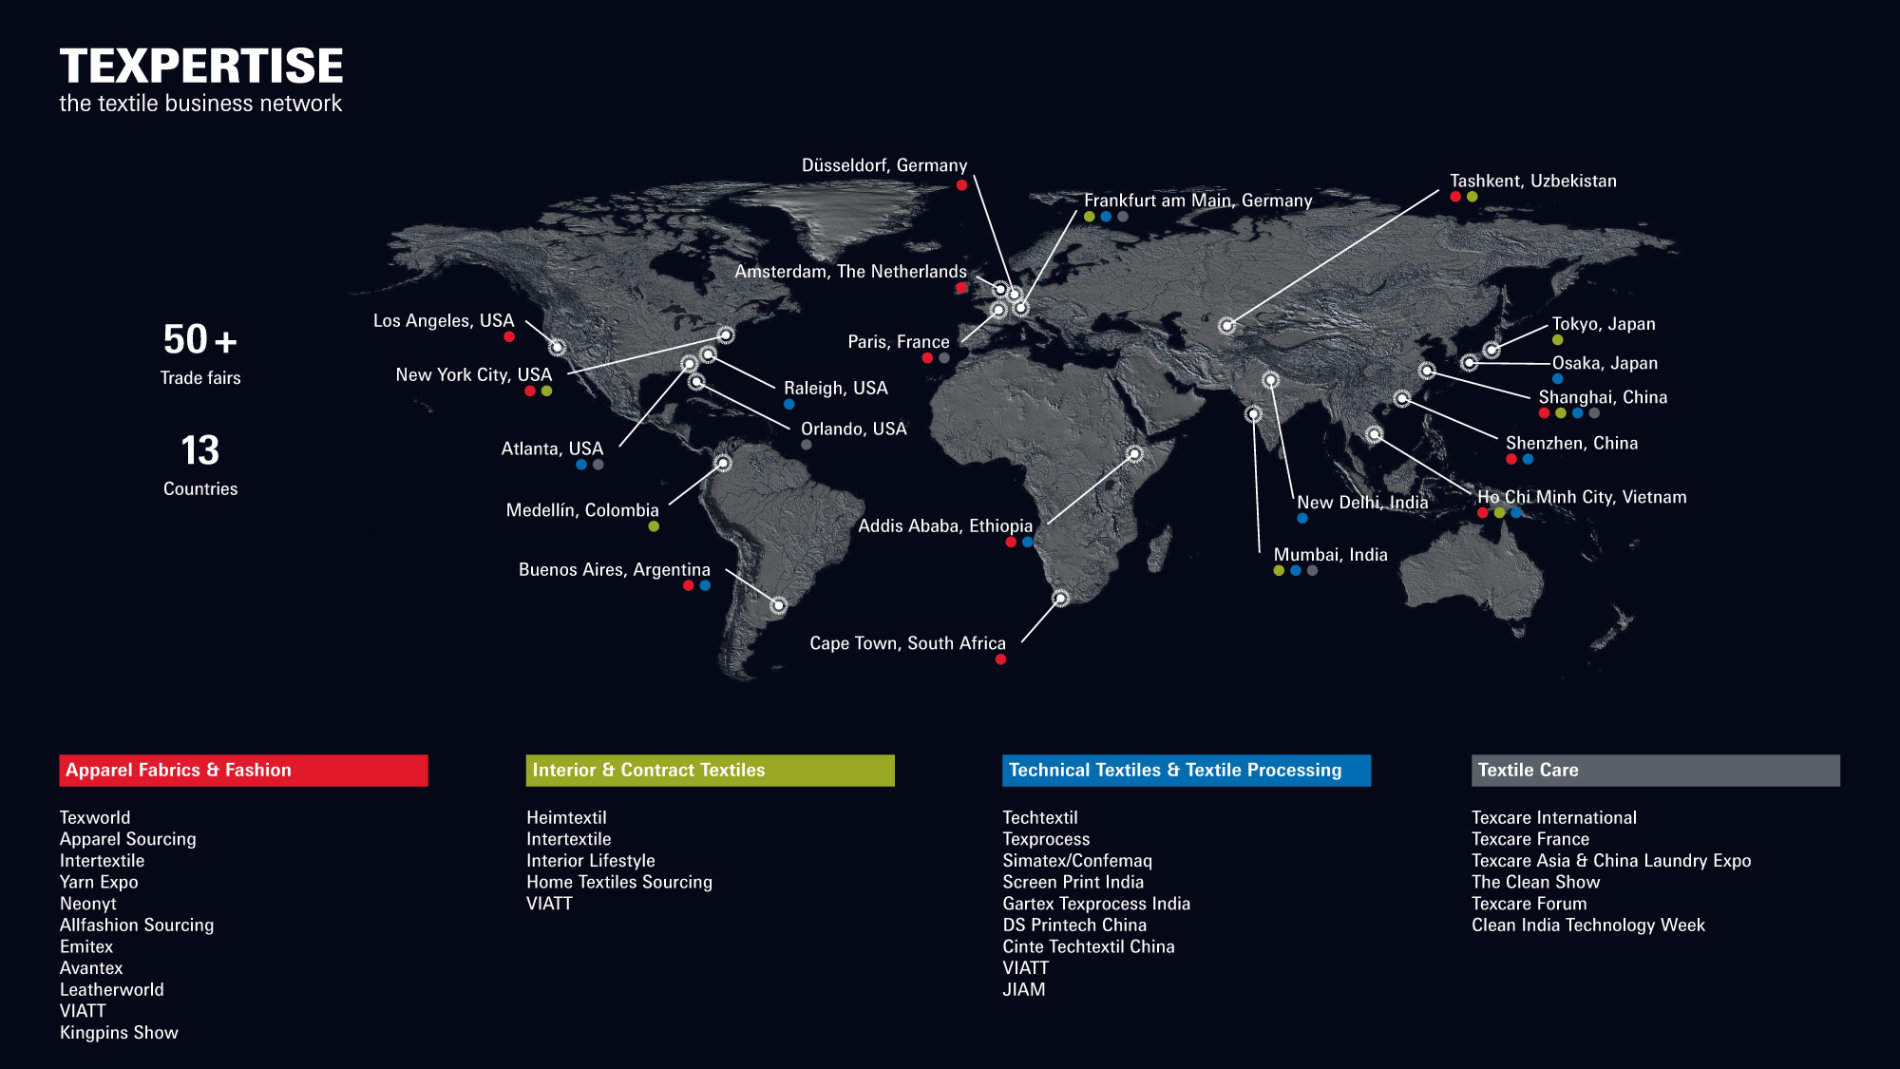 Weltkarte die eine Übersicht aller Locations der unterschiedlichen Textil Messen weltweit aufzeigt